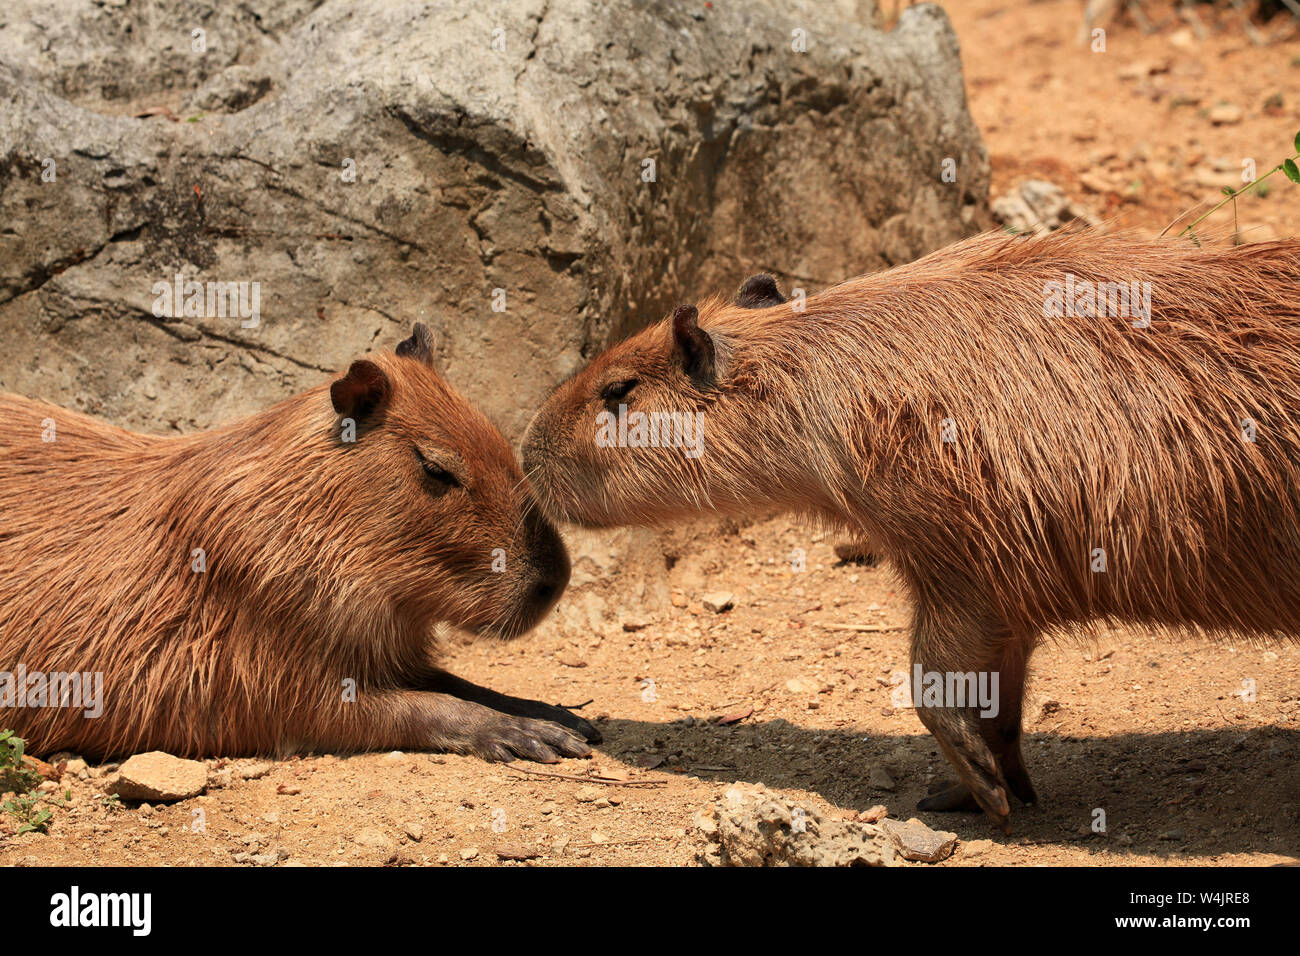 Capybara, Hydrochoerus hydrochaeris, Säugetiere, die in Südamerika, sind die größten Nagetiere der Welt. Zwei Capybara der gleichen Gruppe Anzeige Soc Stockfoto